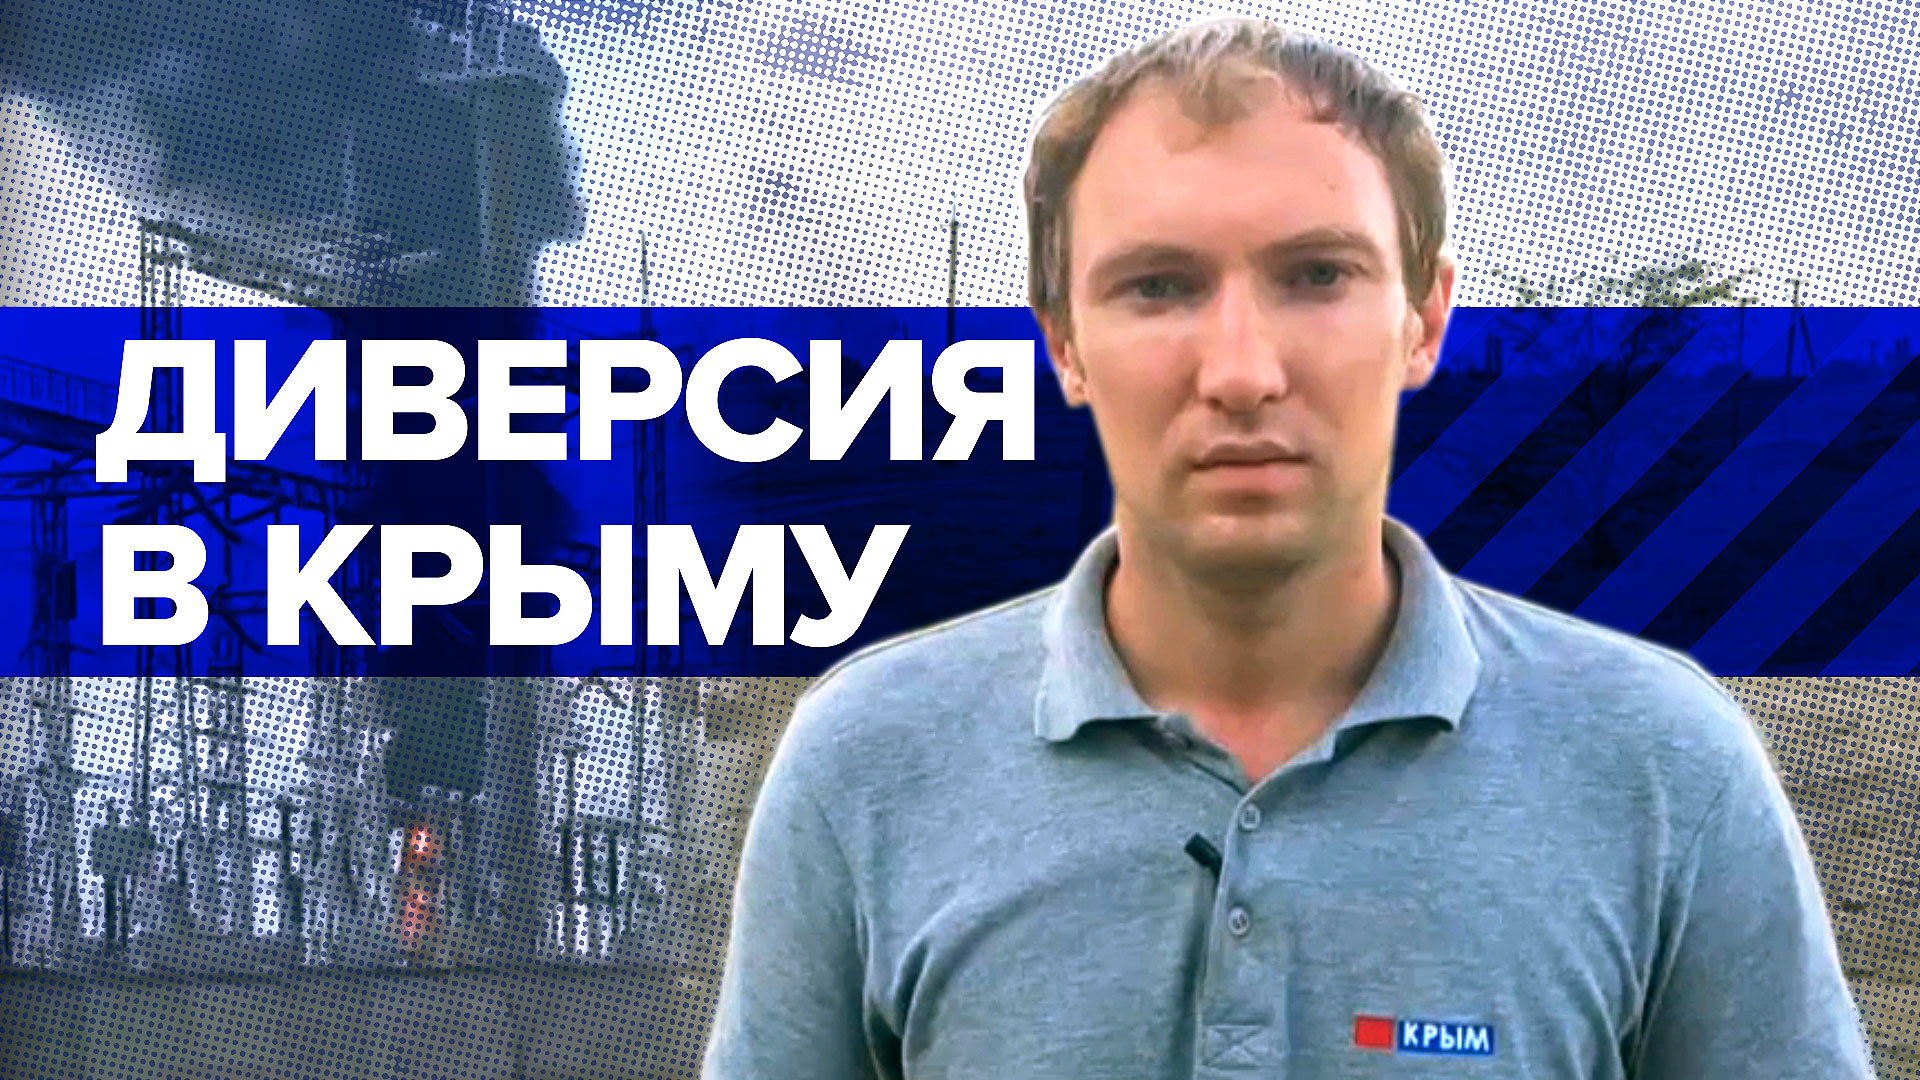 Взрывы в Джанкойском районе: что известно о детонации боеприпасов в Крыму